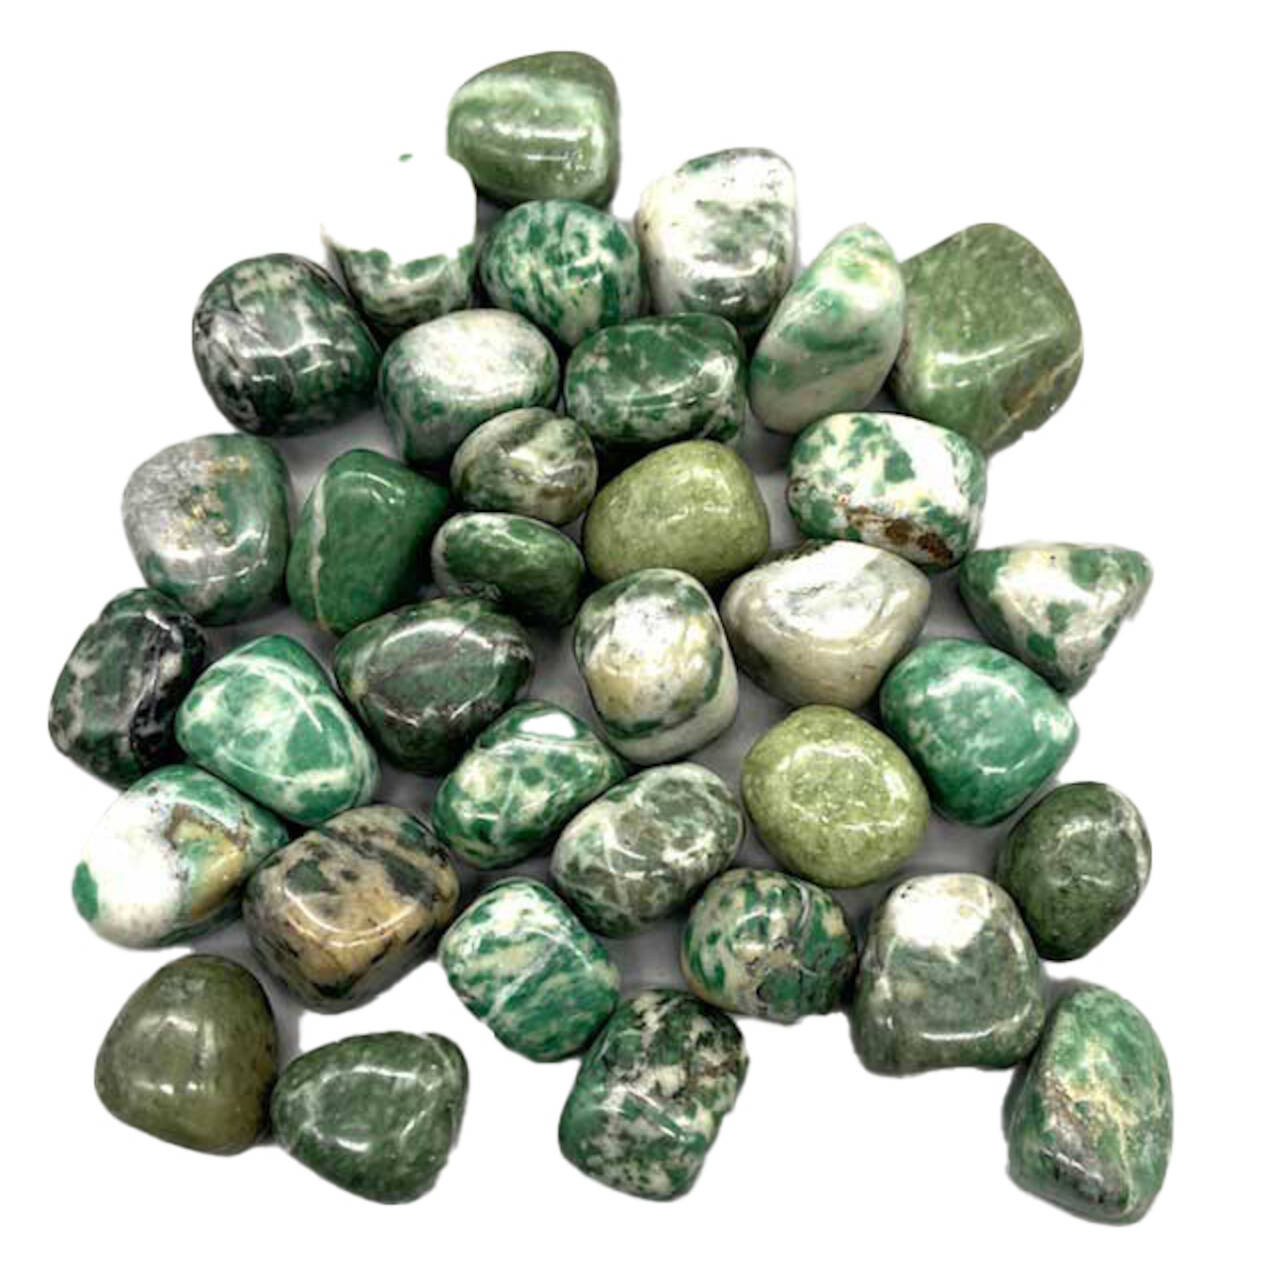 Jade, Rich Tumbled Stones 1 Lb.